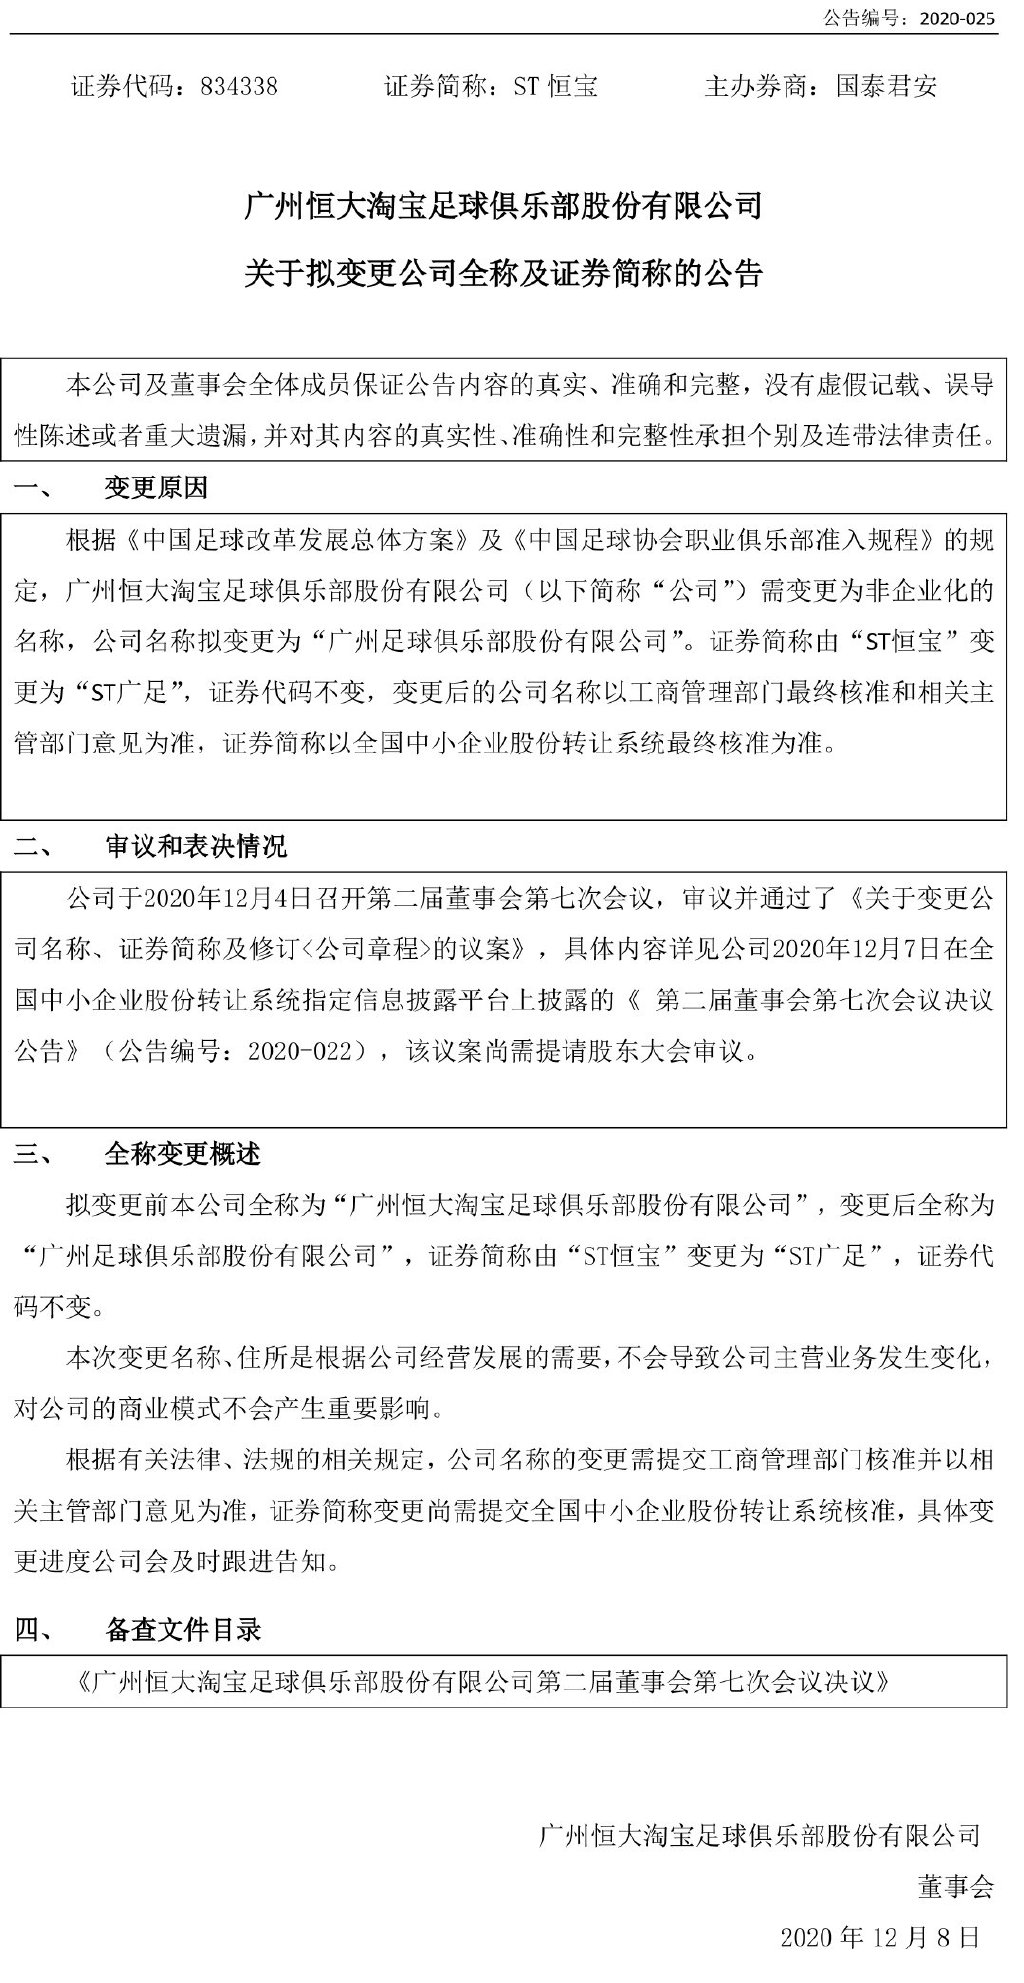 恒大队发布变更名称公告 改为广州足球俱乐部股份有限公司_相关